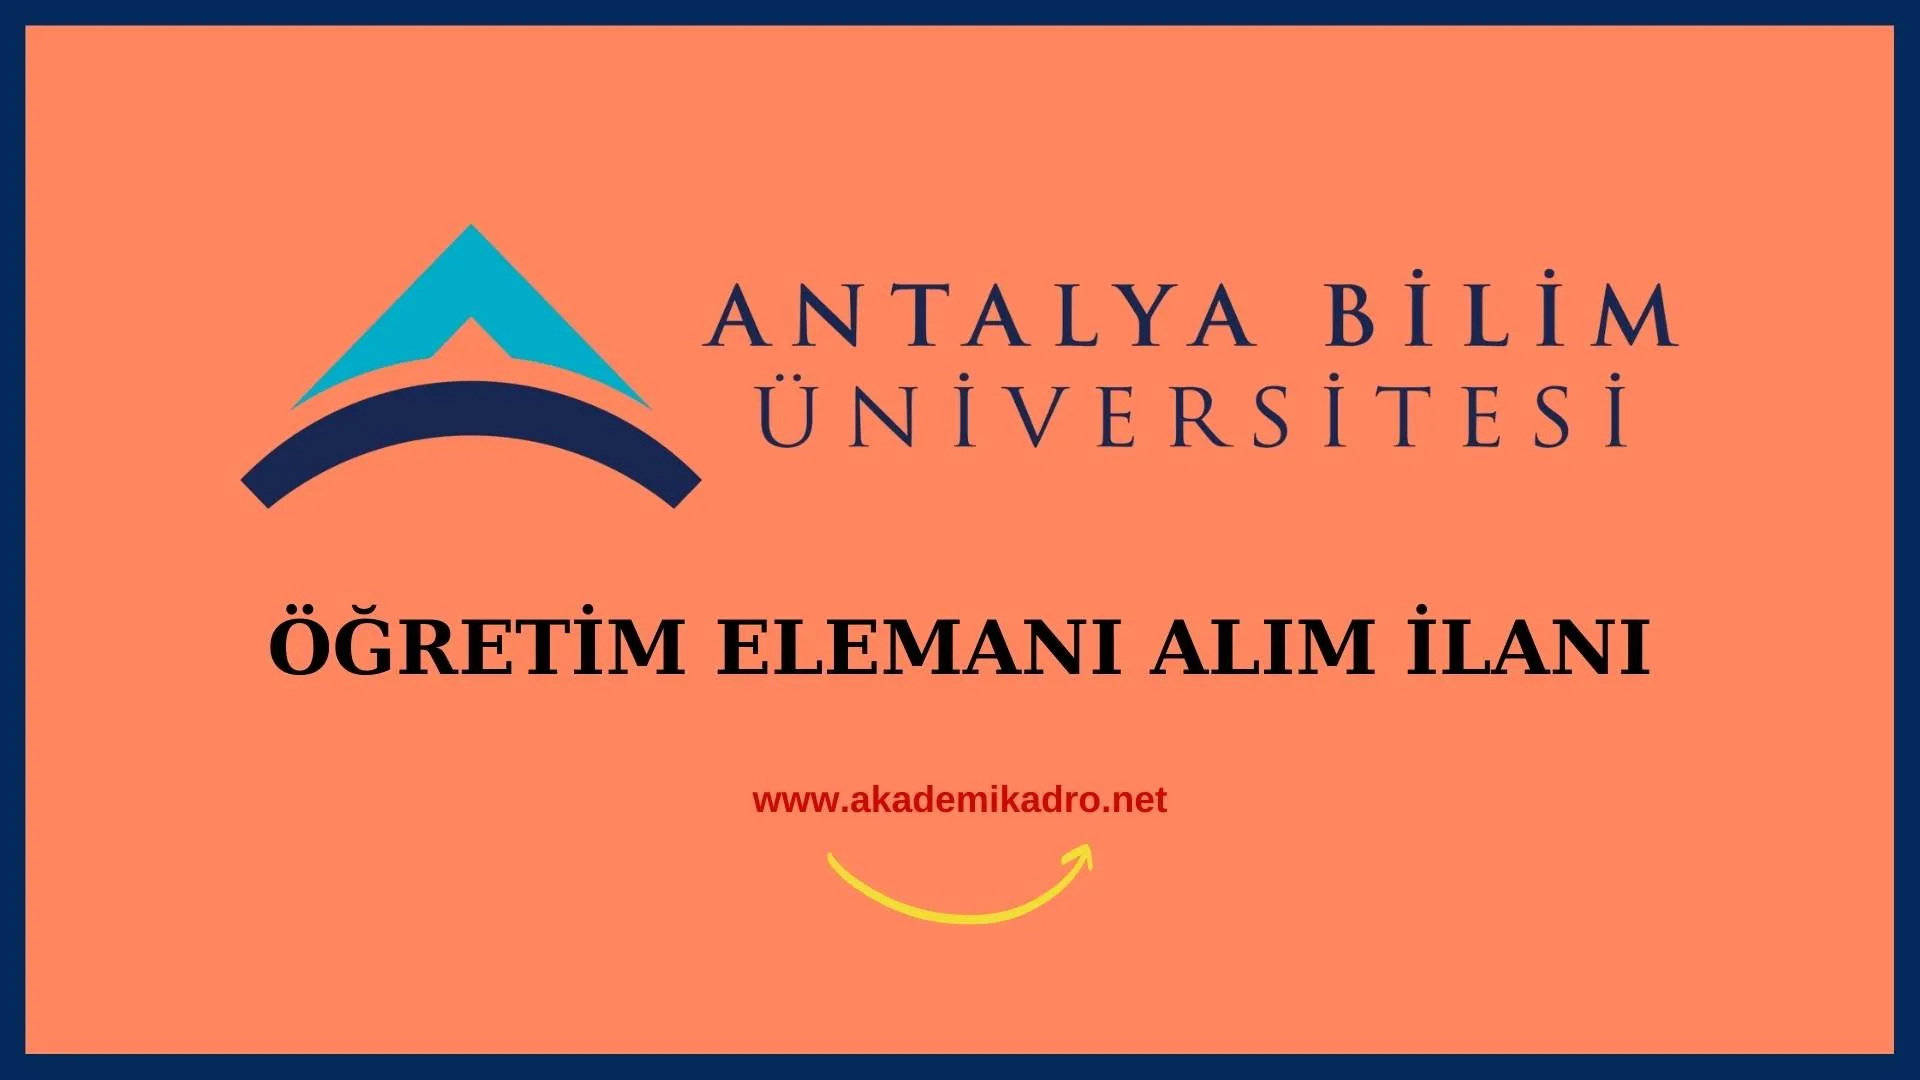 Antalya Bilim Üniversitesi 23 Öğretim üyesi, 8 Araştırma görevlisi ve 8 Öğretim Görevlisi alacak.